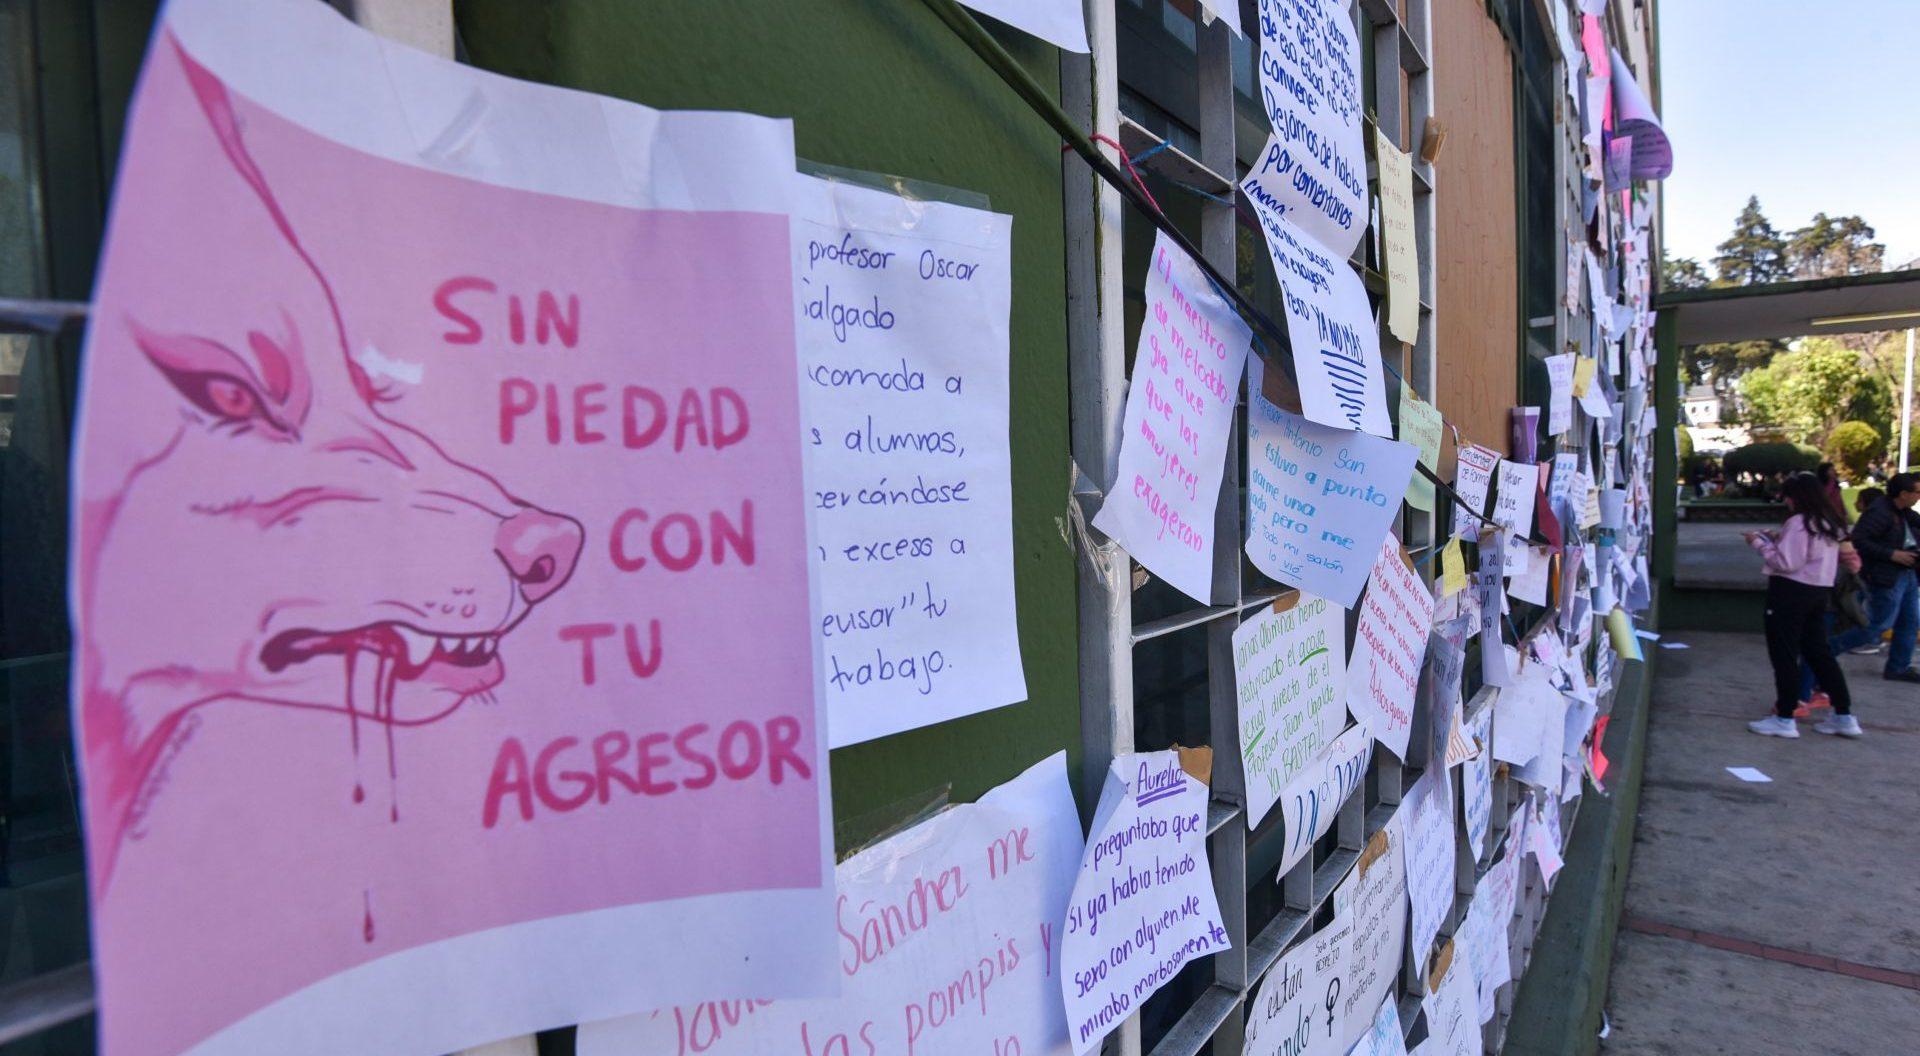 Organizaciones piden a Unistmo y autoridades justicia en casos de acoso sexual de profesores